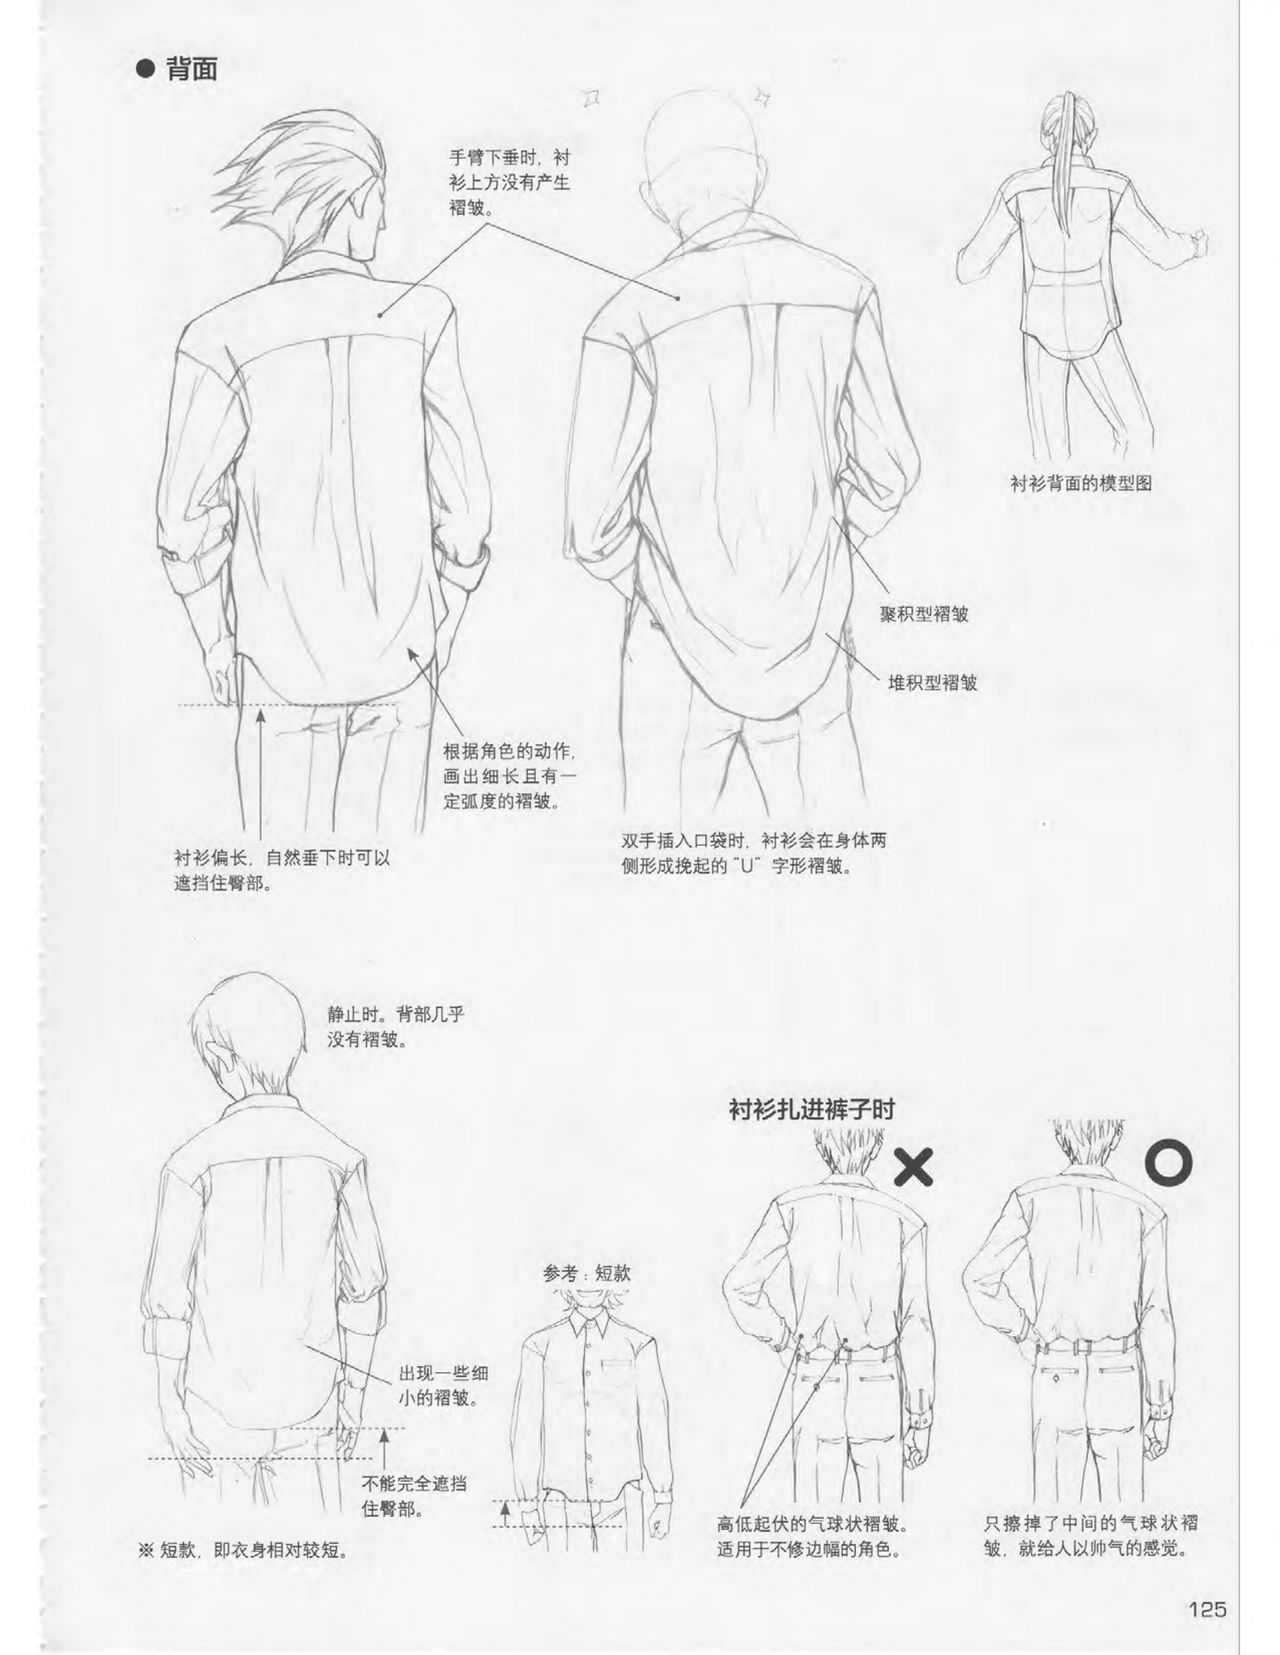 Japanese Manga Master Lecture 3: Lin Akira and Kakumaru Maru Talk About Glamorous Character Modeling 124